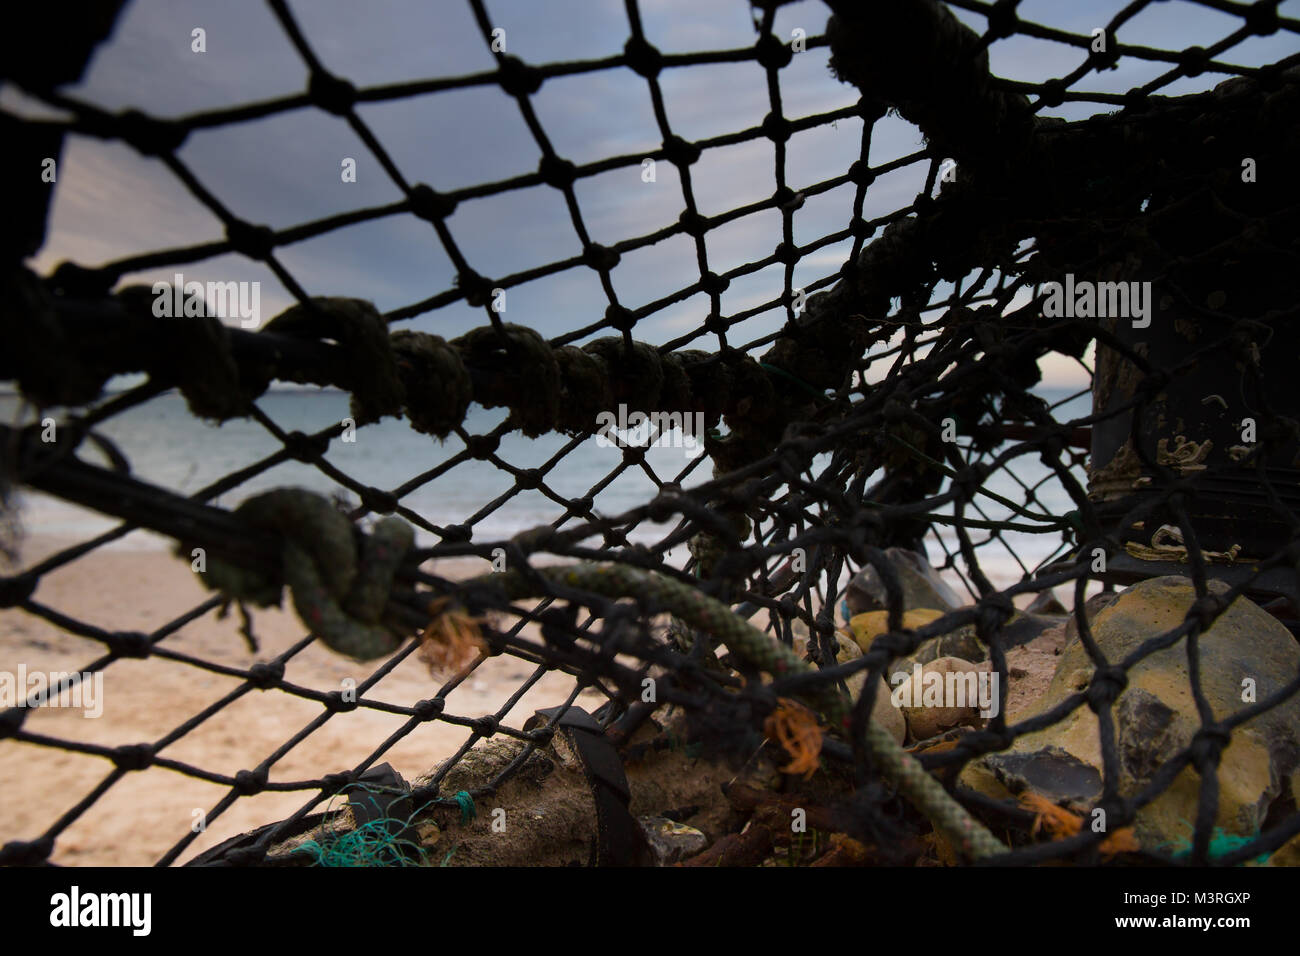 Chiusura del vecchio, scartato lobster pot abbandonati sulla spiaggia, tra i detriti si è incagliata dalla marea. Soft-focus Tramonto Tramonto, visibile attraverso la rete. Foto Stock